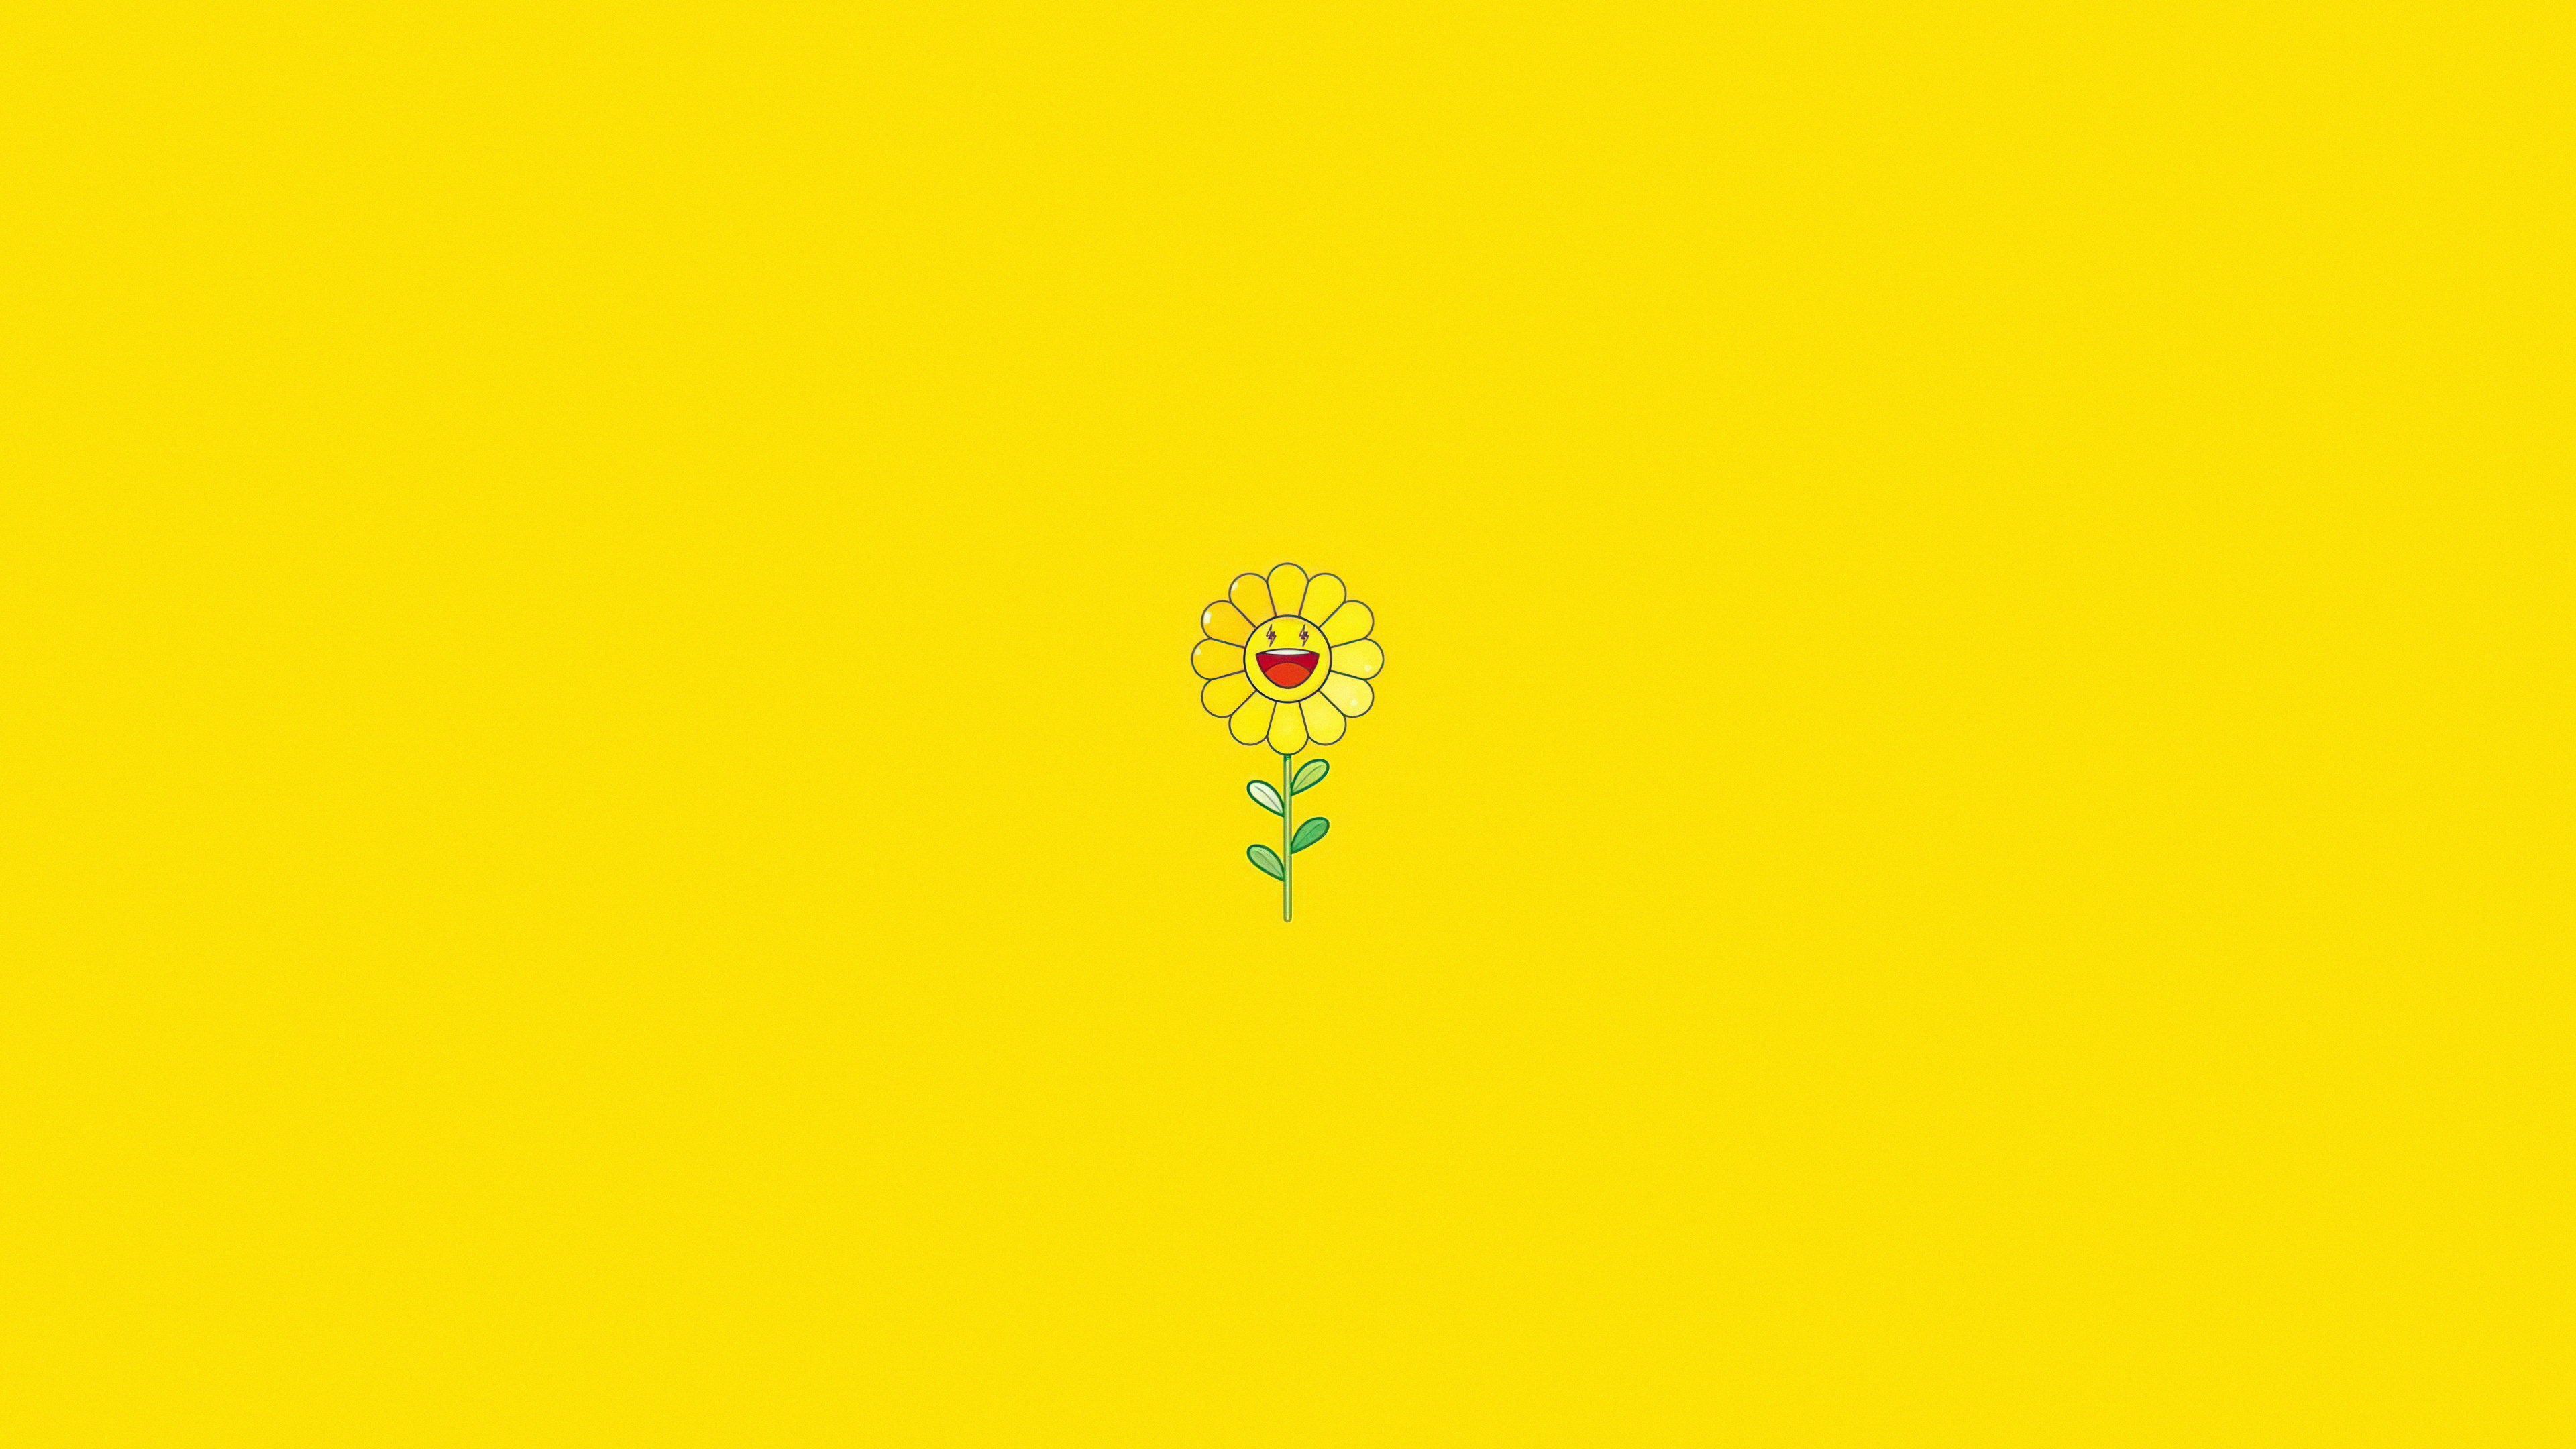 Nền hoa hướng dương màu vàng với độ phân giải cao 1920x1080 là một hình ảnh rực rỡ, tươi sáng và đầy sức sống. Hình ảnh này sẽ tạo cảm giác mãnh liệt, năng động và vui tươi cho bạn khi sử dụng laptop.